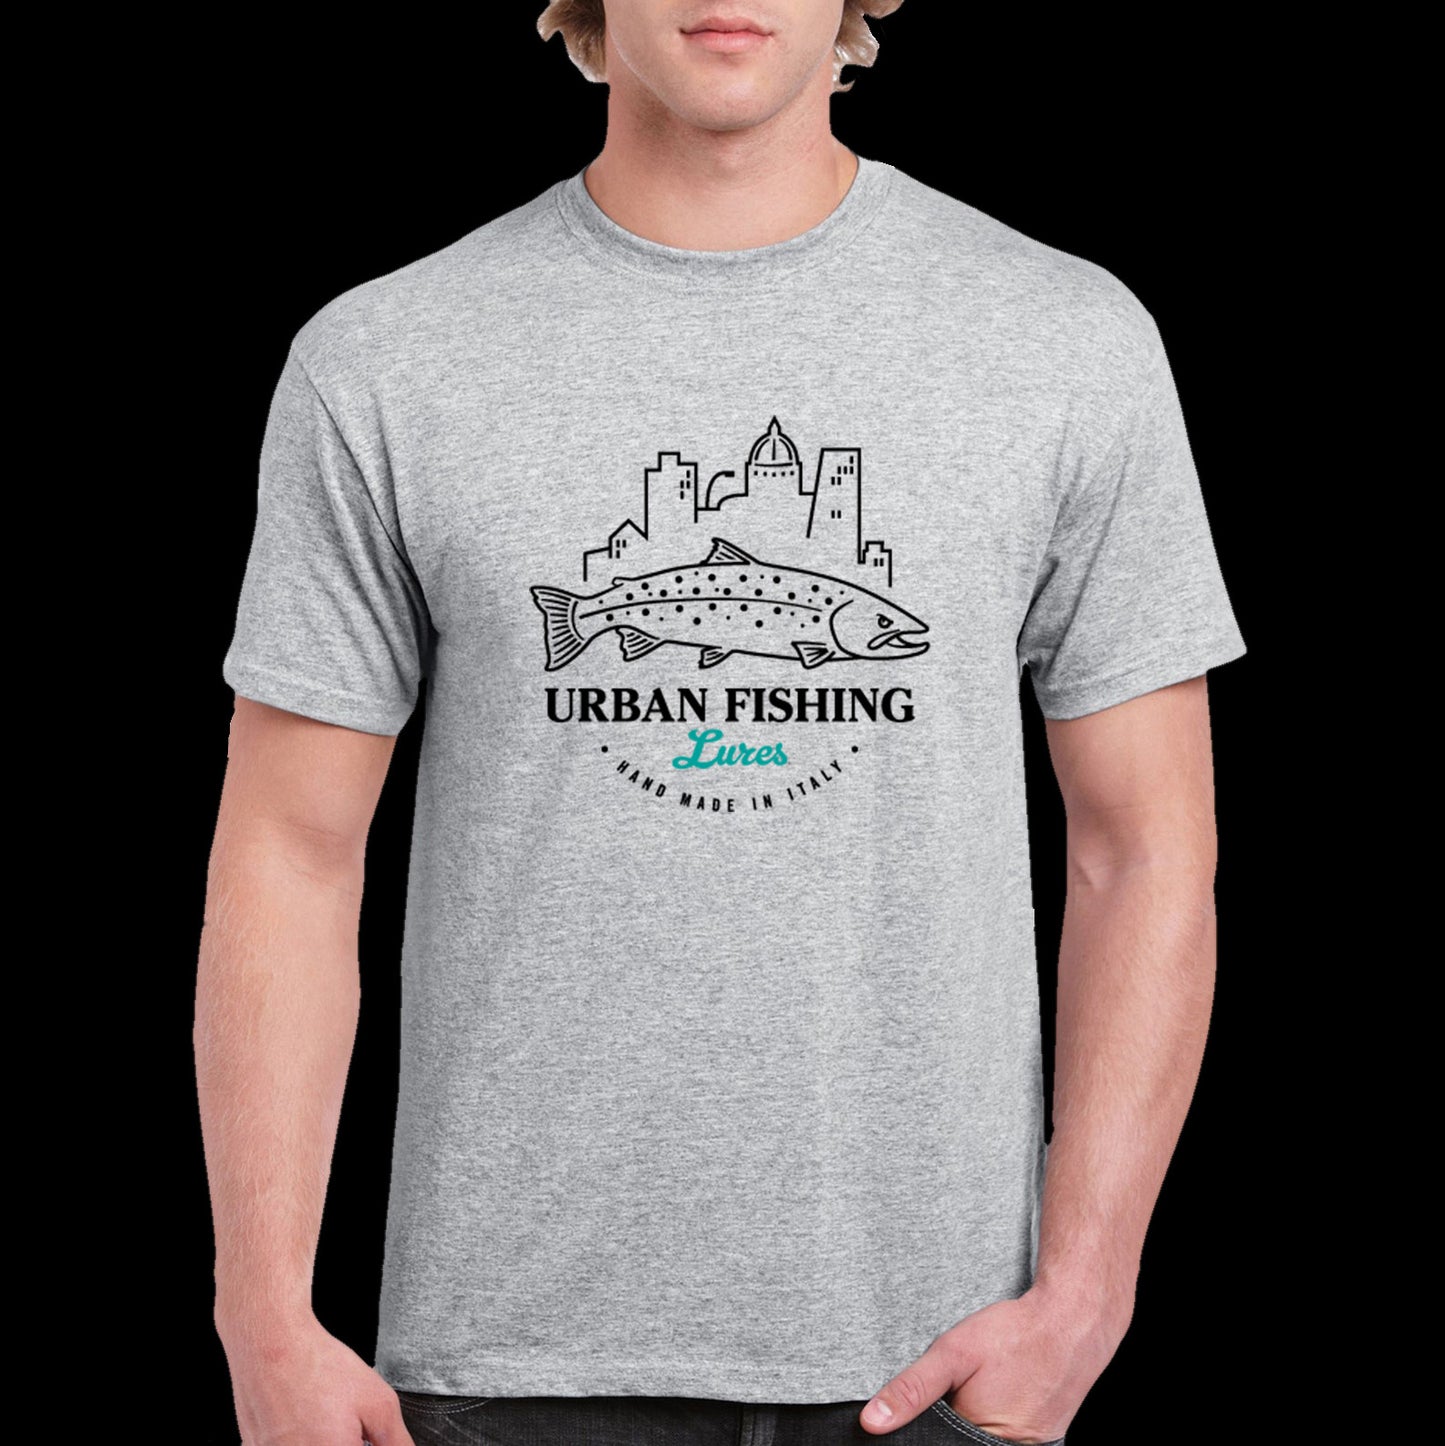 "UrbanFishing Lures" T-shirt